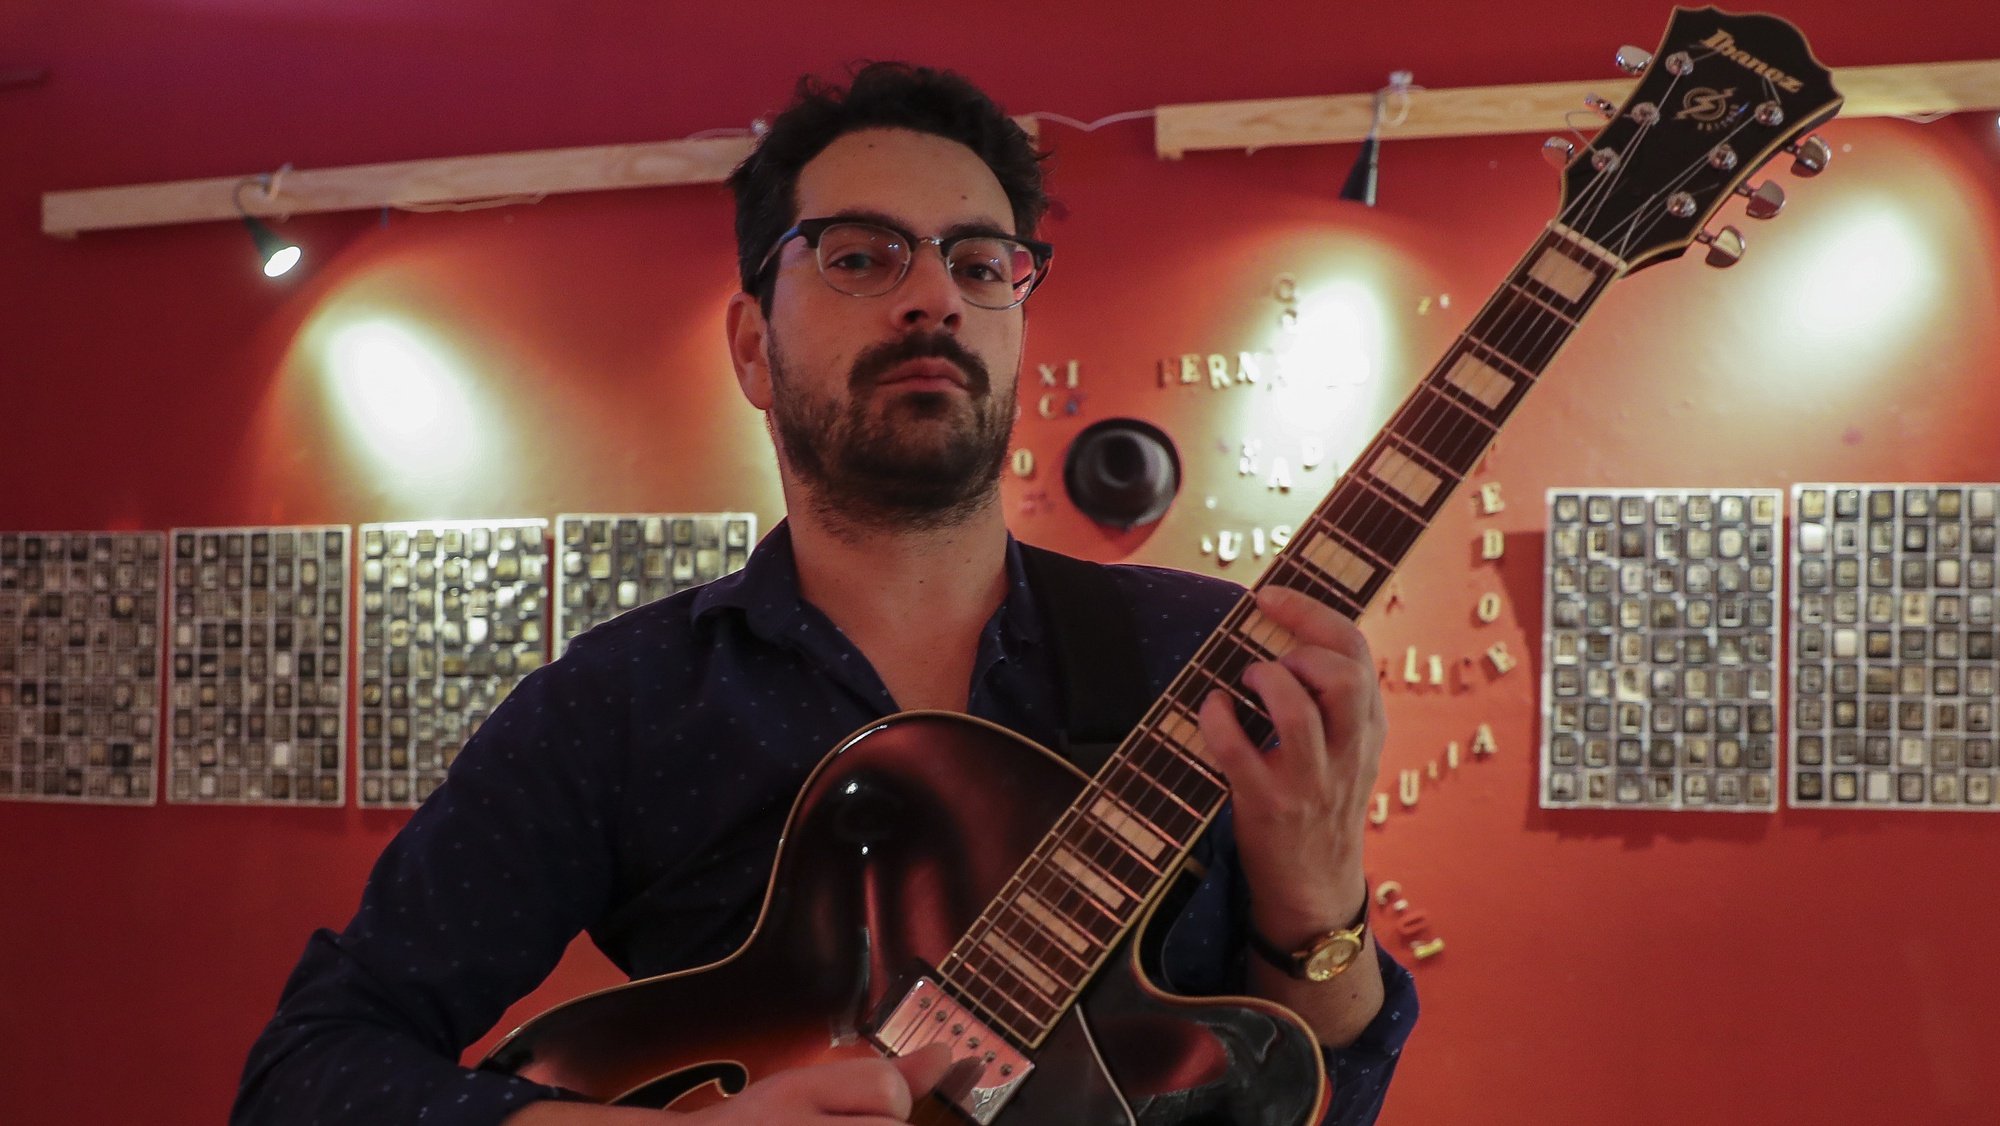 Os guitarristas Bruno Pernadas é um dos protagonistas da 5.ª edição do Guitarras ao Alto, iniciativa que decorre em maio e junho em vários locais do Alentejo e que hoje foi apresentada na Fábrica Braço de Prata, em Lisboa, 27 de março de 2019. JOÃO RELVAS/LUSA